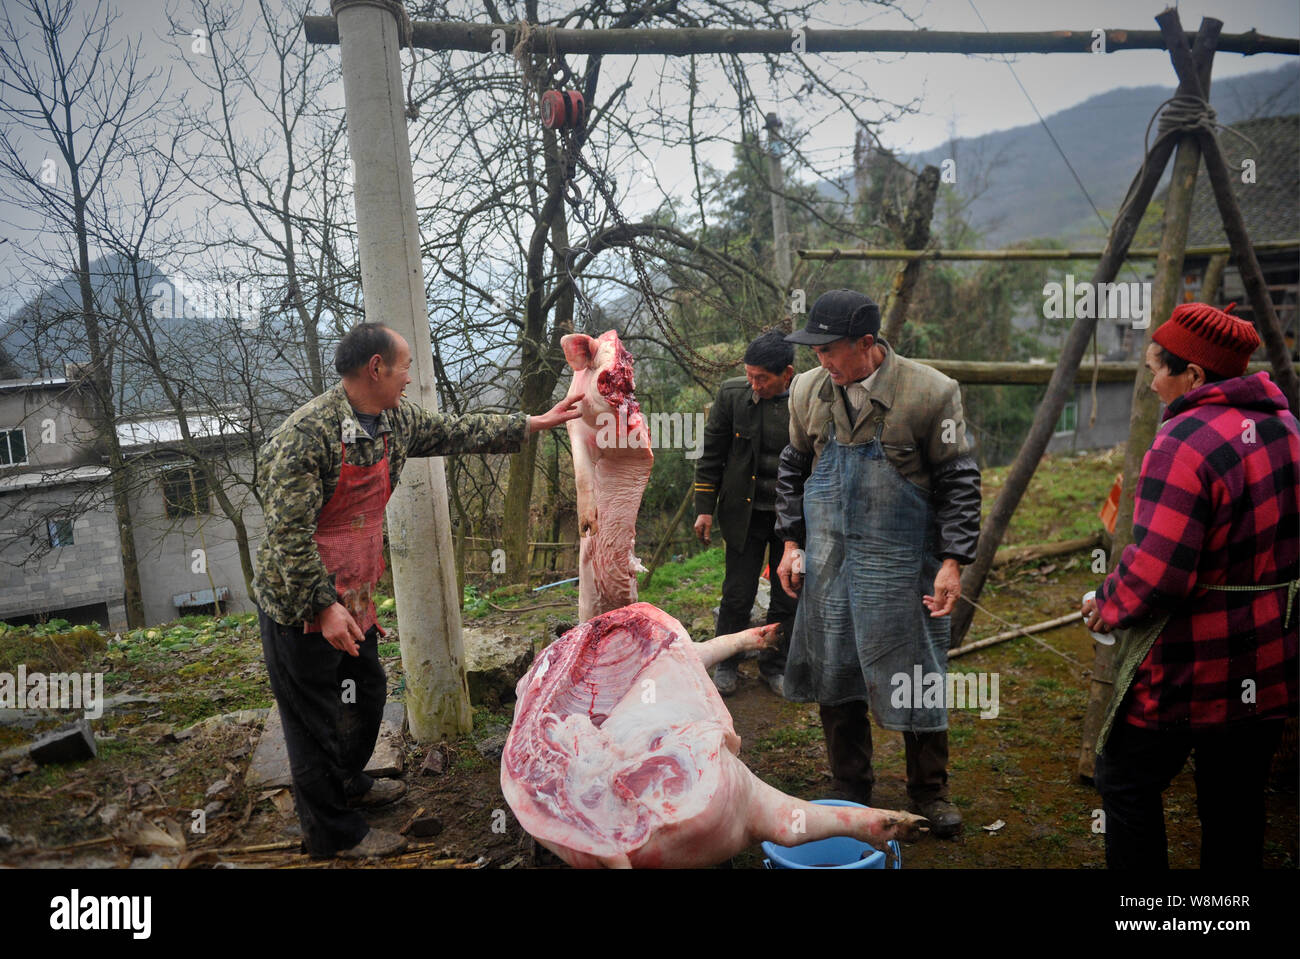 Carniceros chinos mirar las mitades de un cerdo en la casa de un aldeano en preparación para el próximo Año Nuevo Lunar chino, también conocida como la primavera Festiva Foto de stock